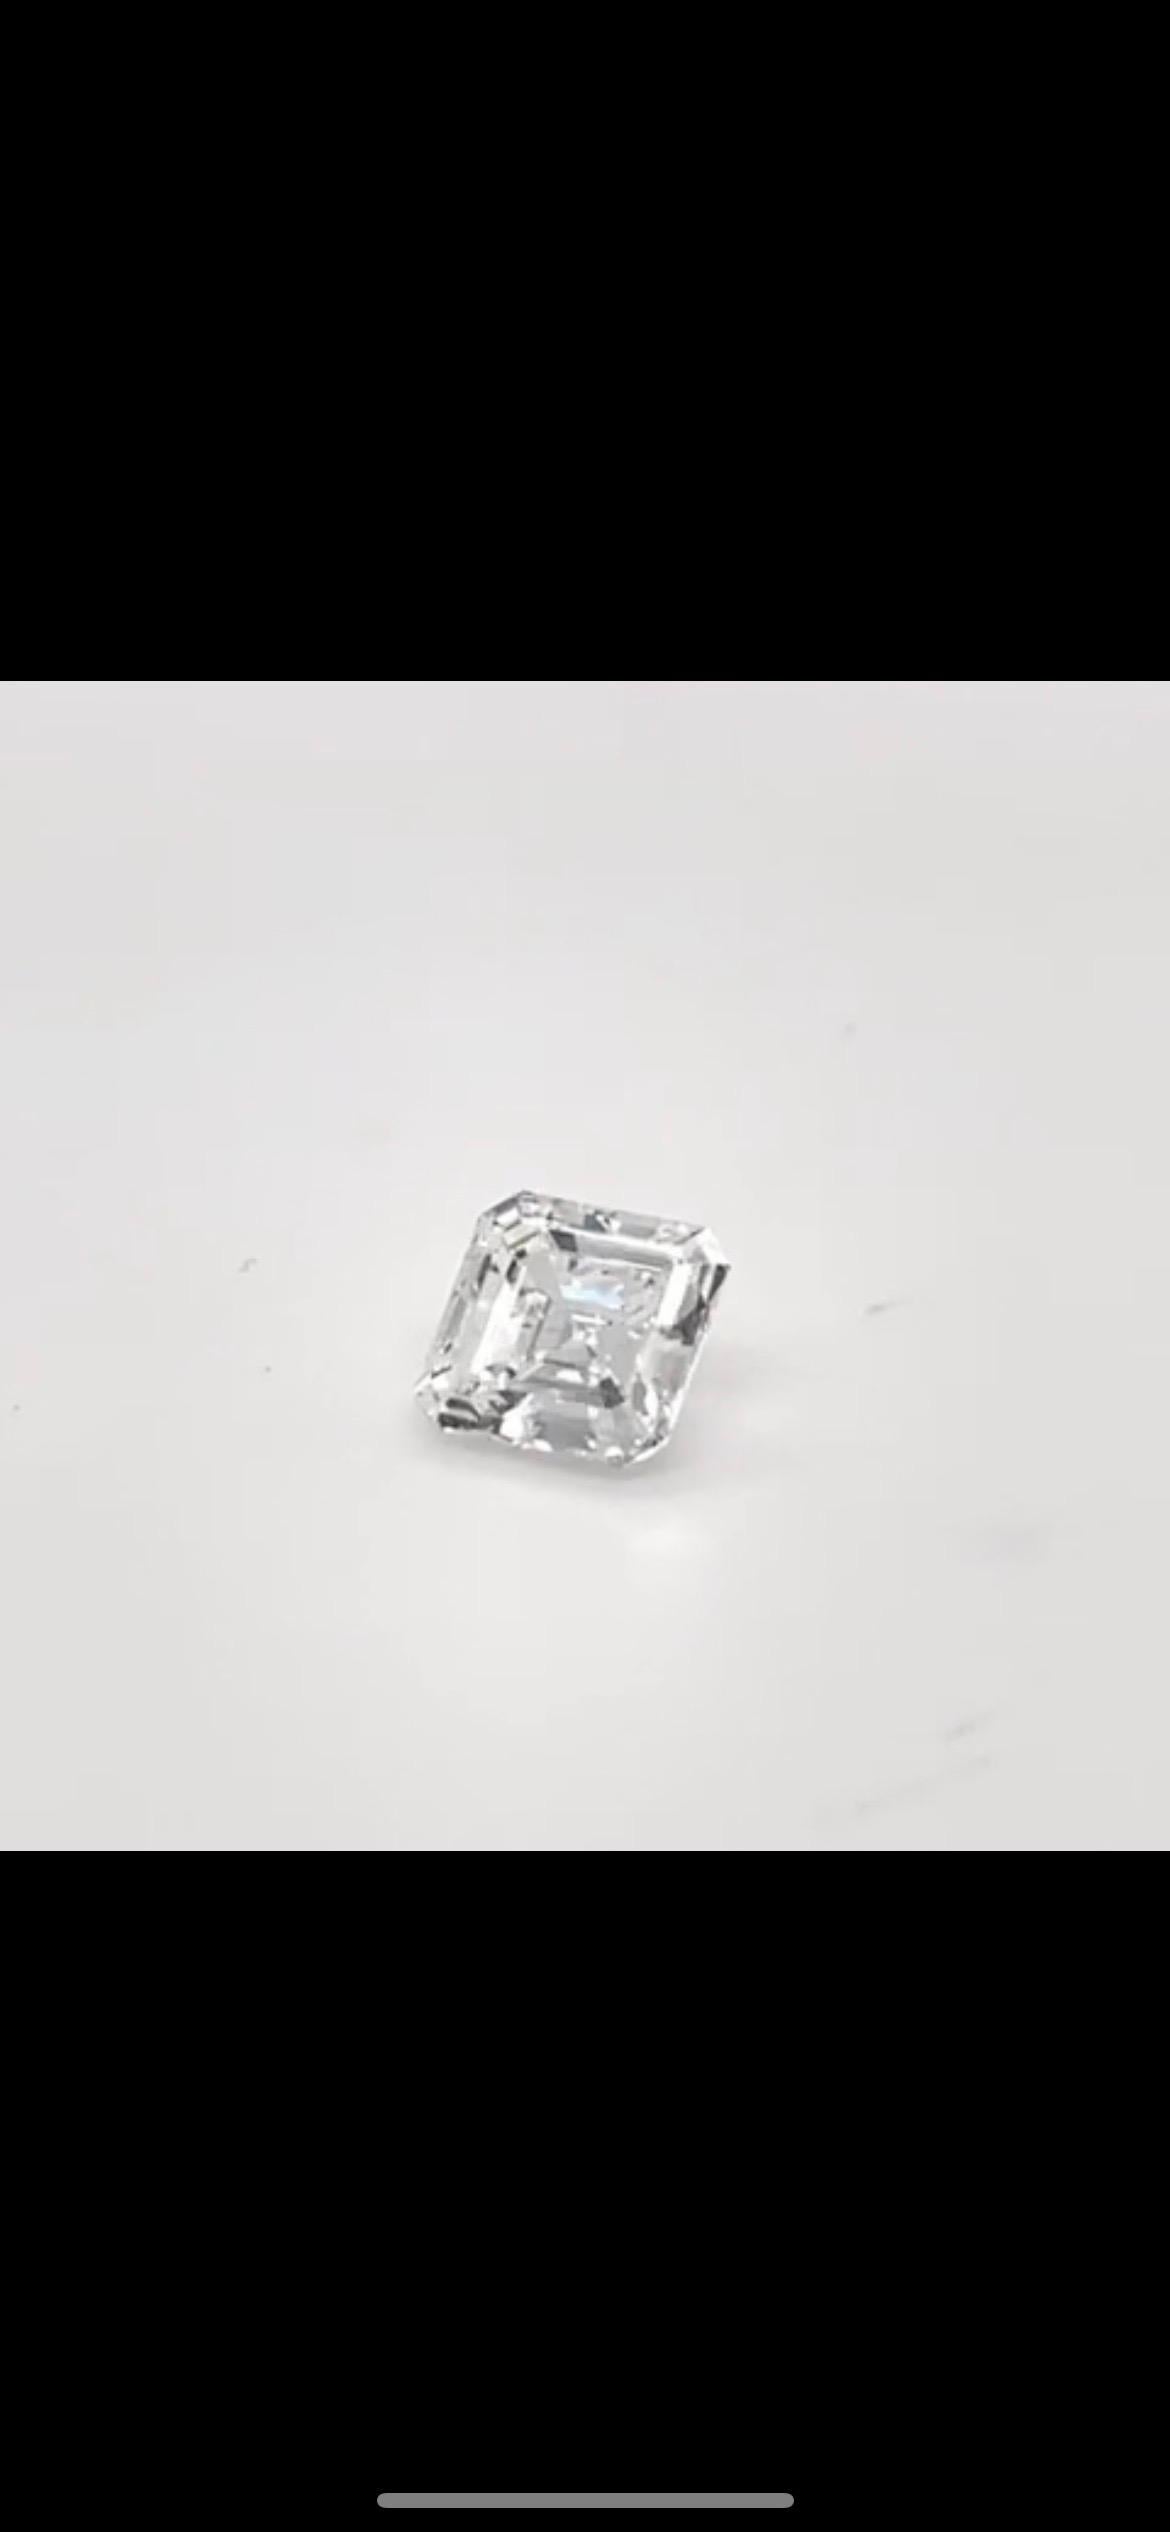 2.4 carat diamond ring price